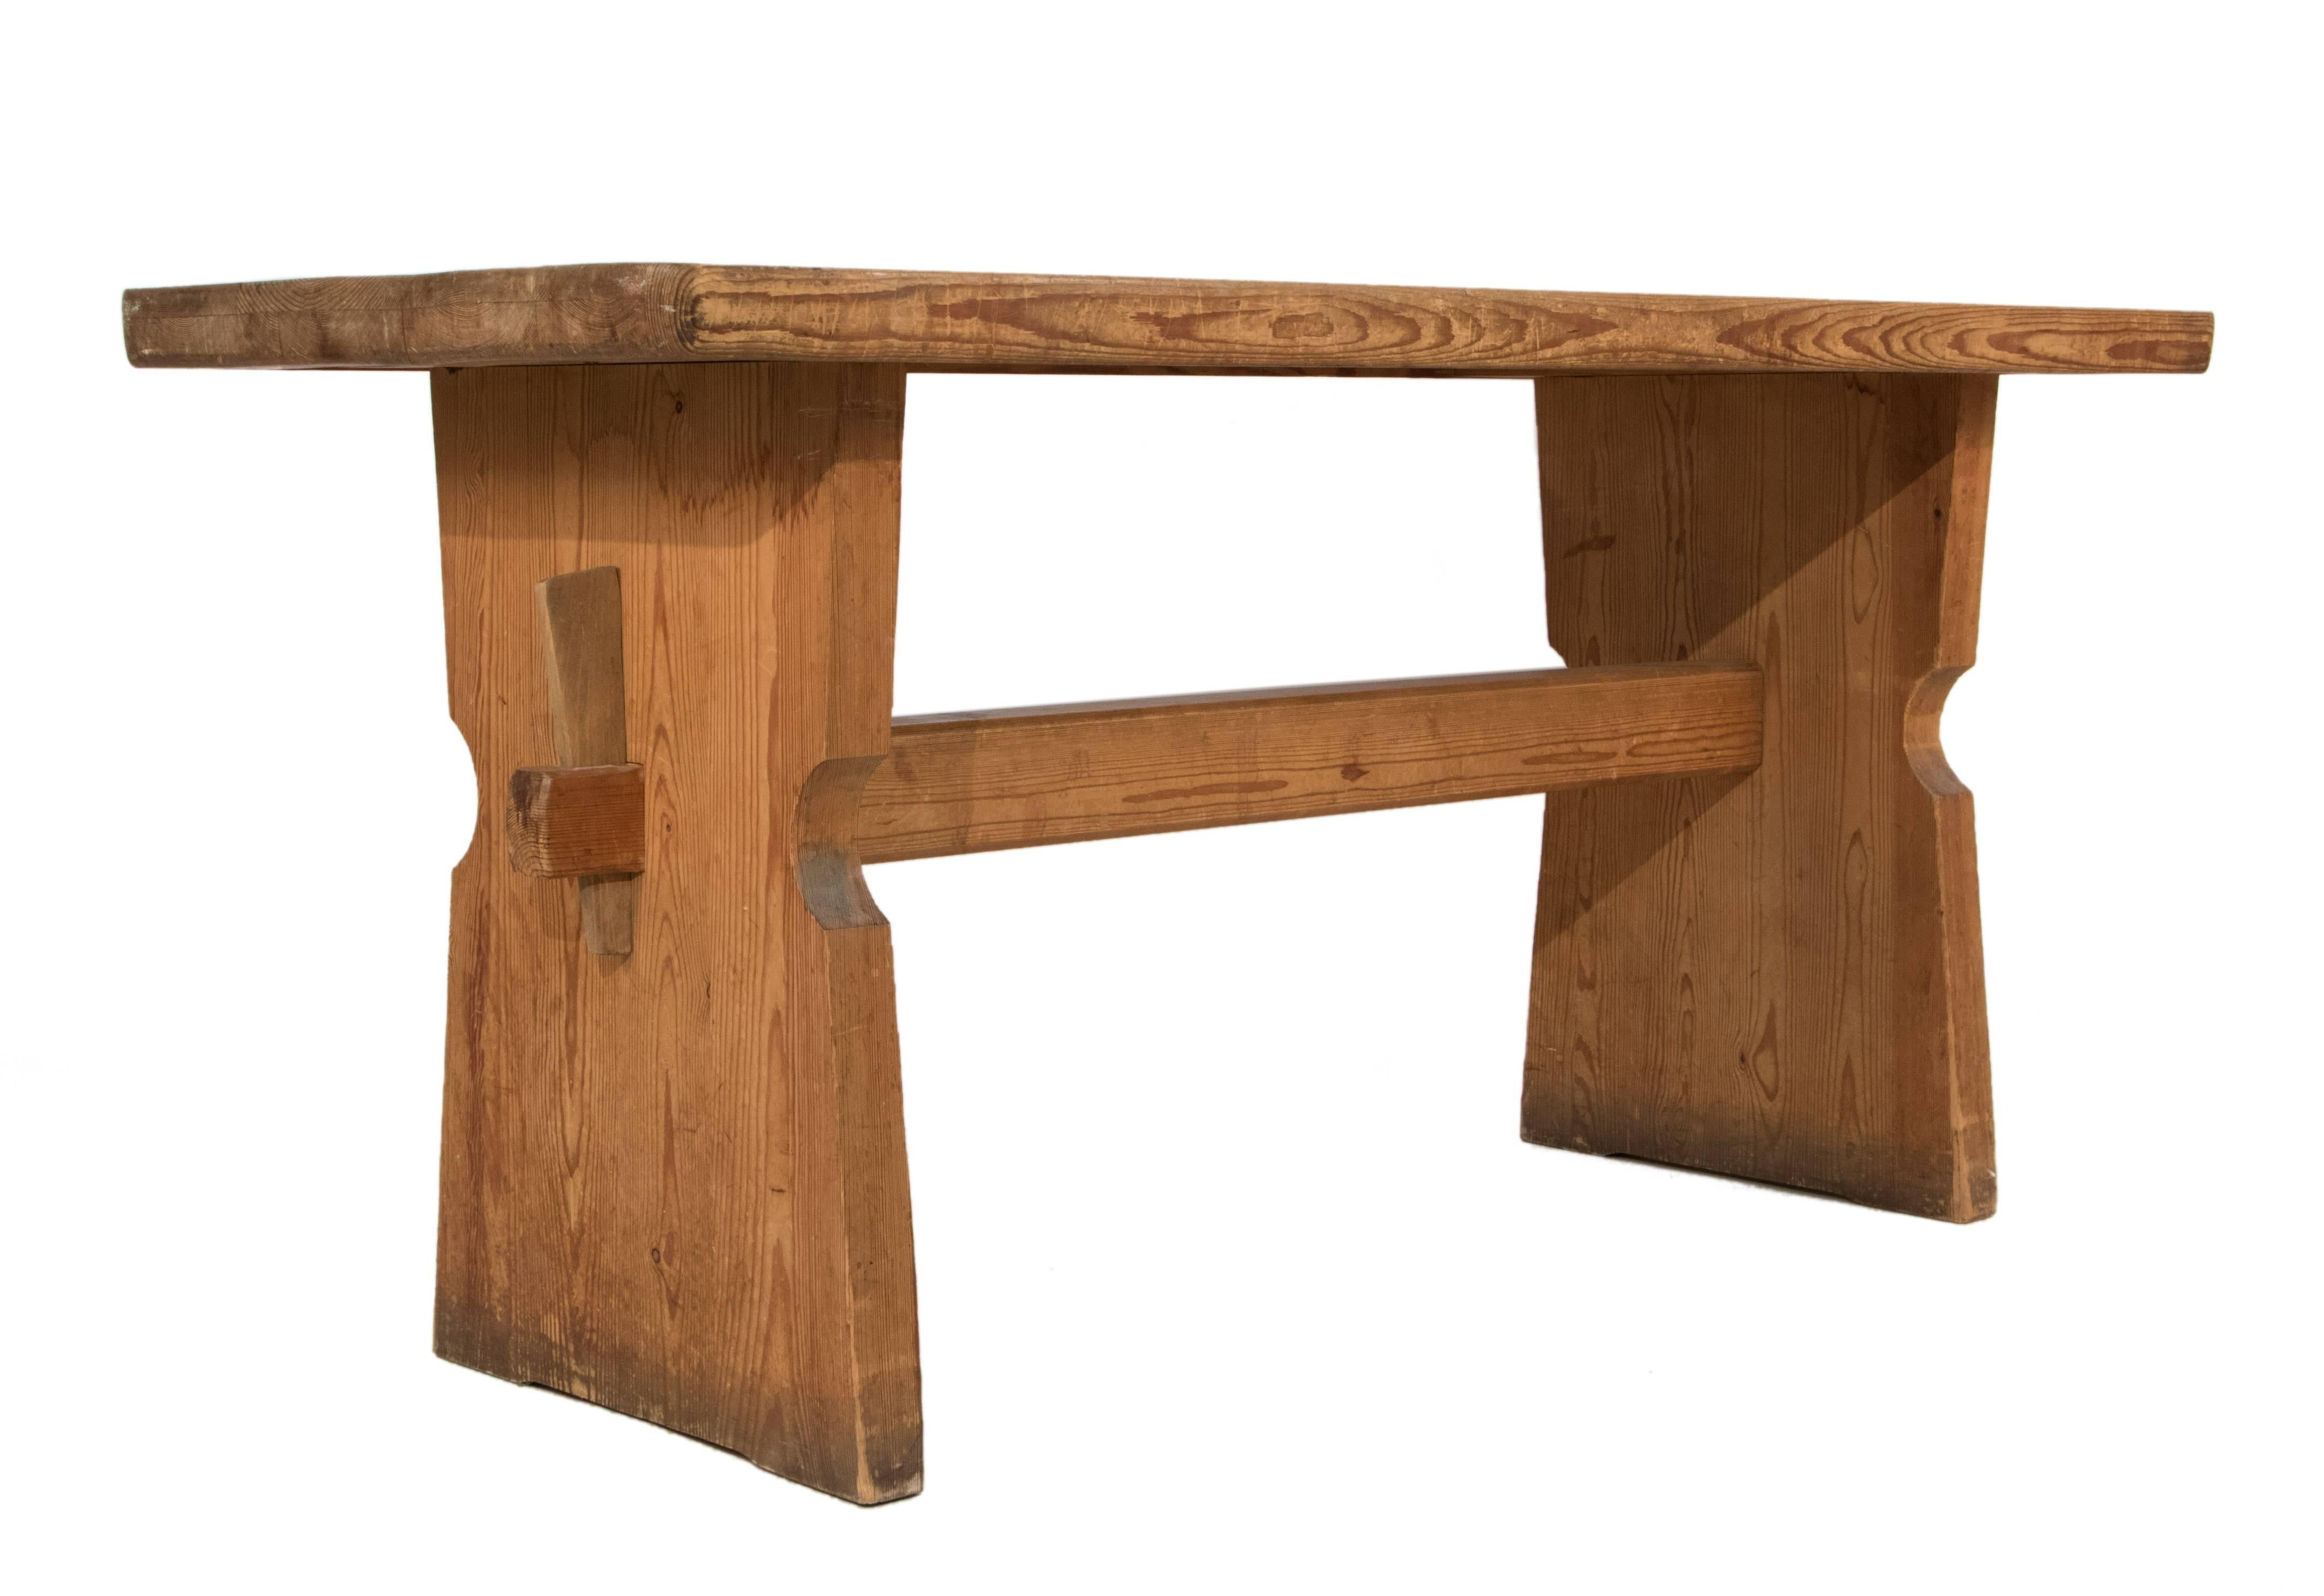 Table by Axel Einar Hjorth.